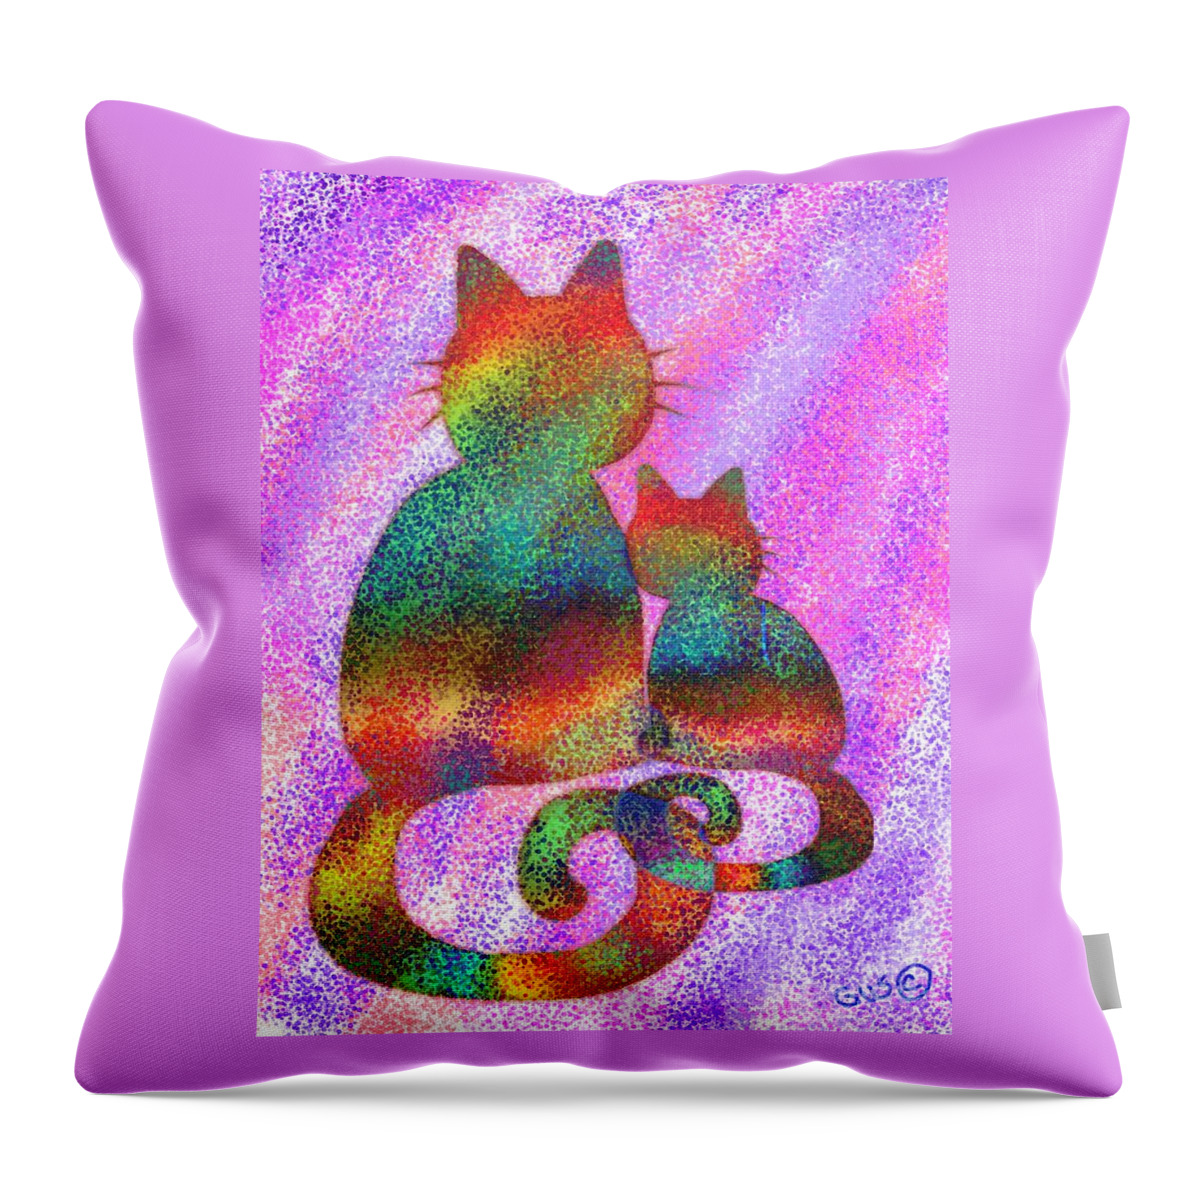 Cat Throw Pillow featuring the digital art Splatter Cats 2 by Nick Gustafson